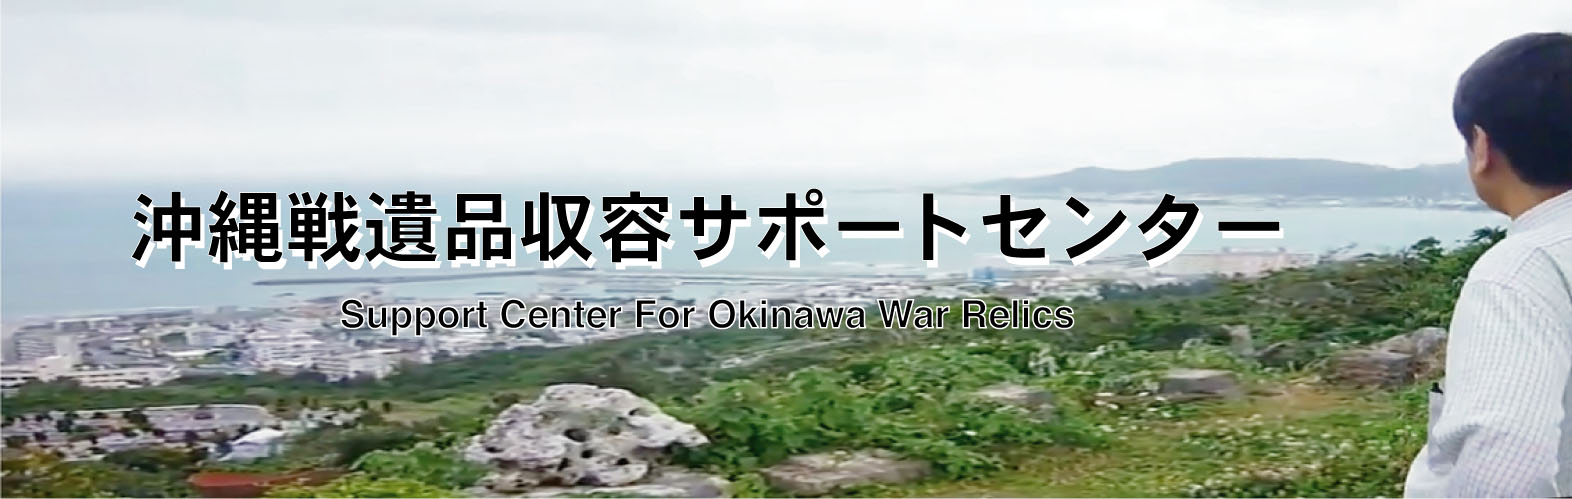 沖縄戦遺品収容サポートセンター Support Center For Okinawa War Relics